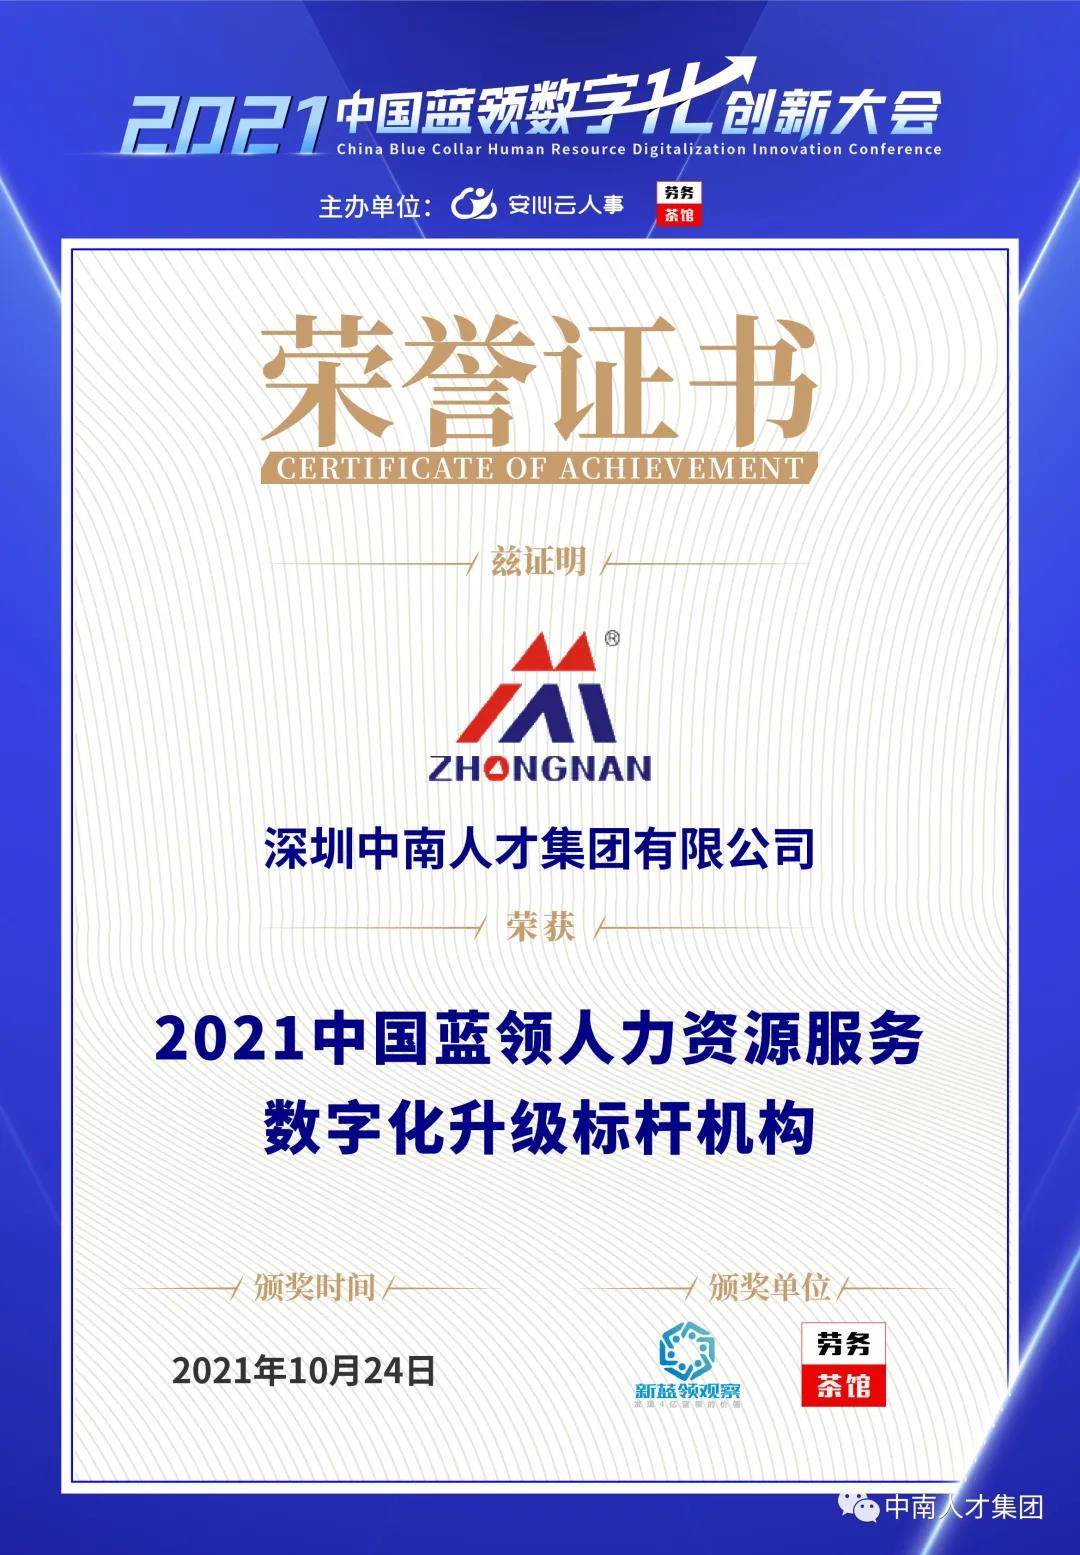 中南人才集团荣获“2021中国蓝领人力资源服务数字化升级标杆